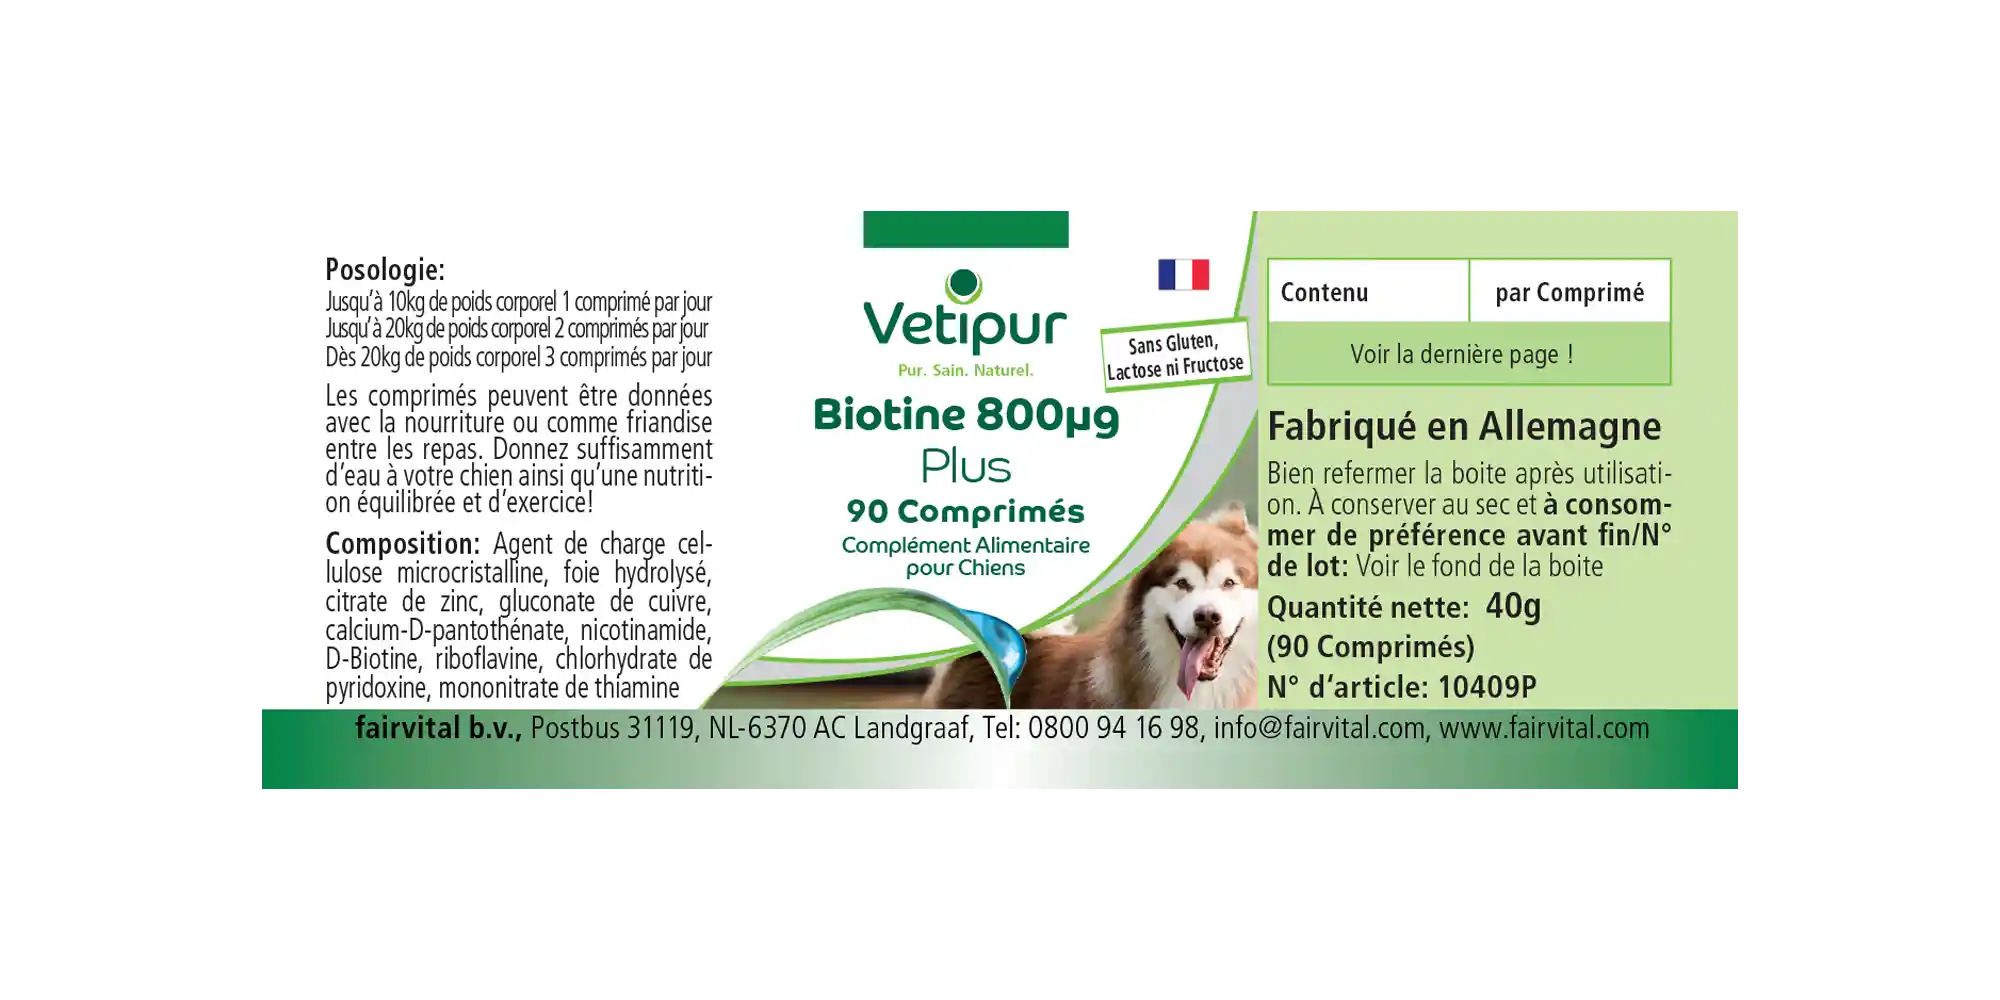 Biotina 800µg - 90 comprimidos para perros | Vetipur